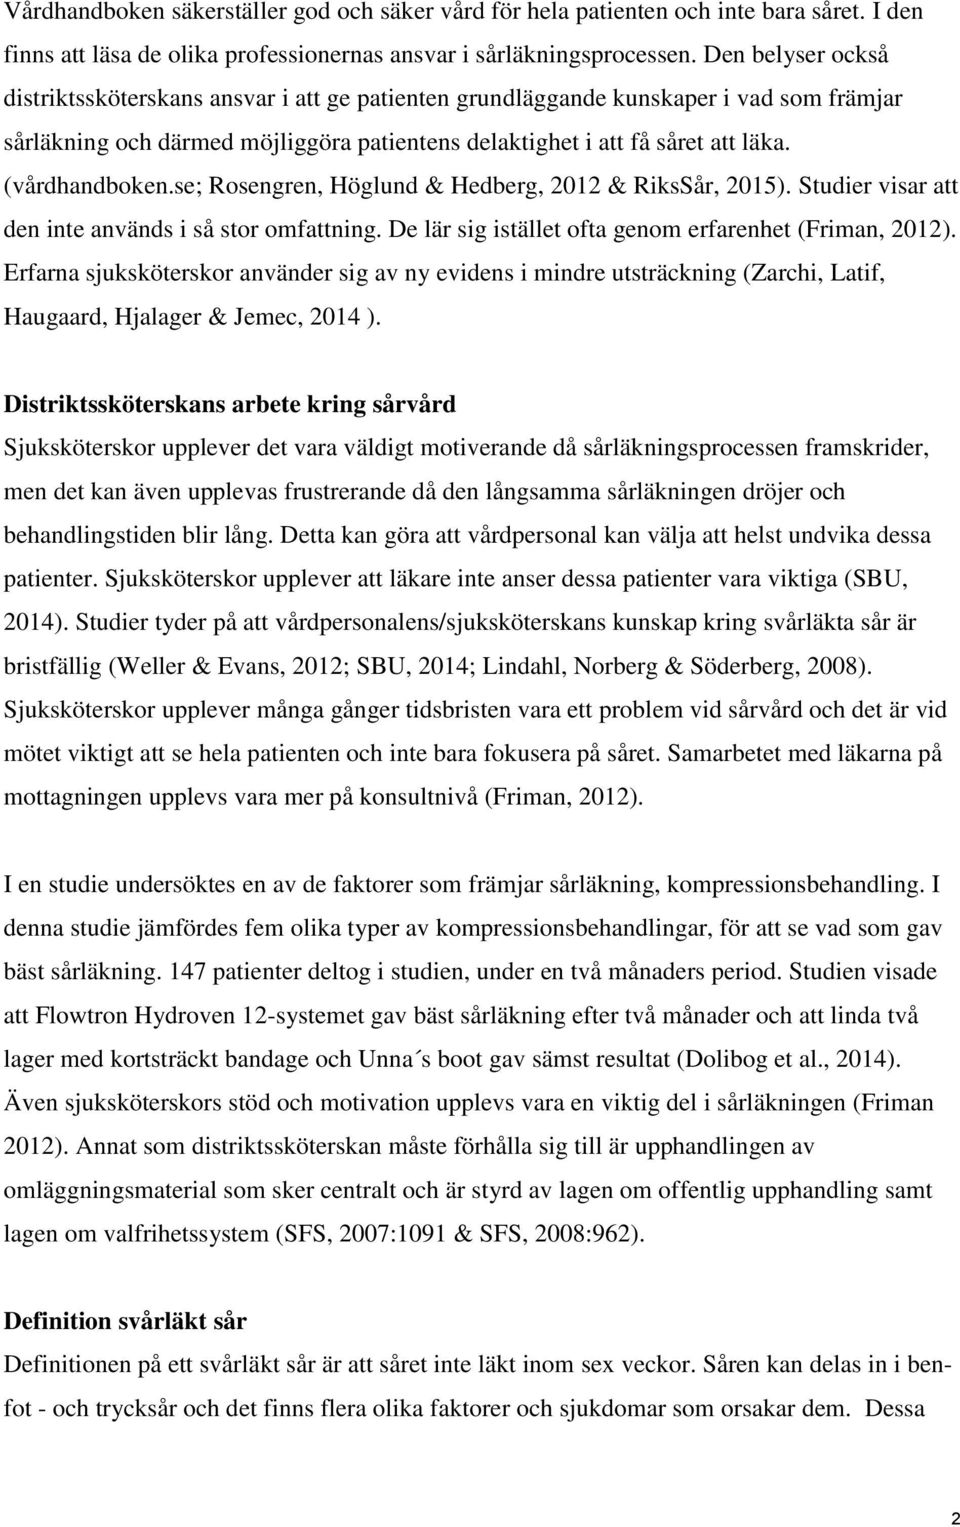 (vårdhandboken.se; Rosengren, Höglund & Hedberg, 2012 & RiksSår, 2015). Studier visar att den inte används i så stor omfattning. De lär sig istället ofta genom erfarenhet (Friman, 2012).